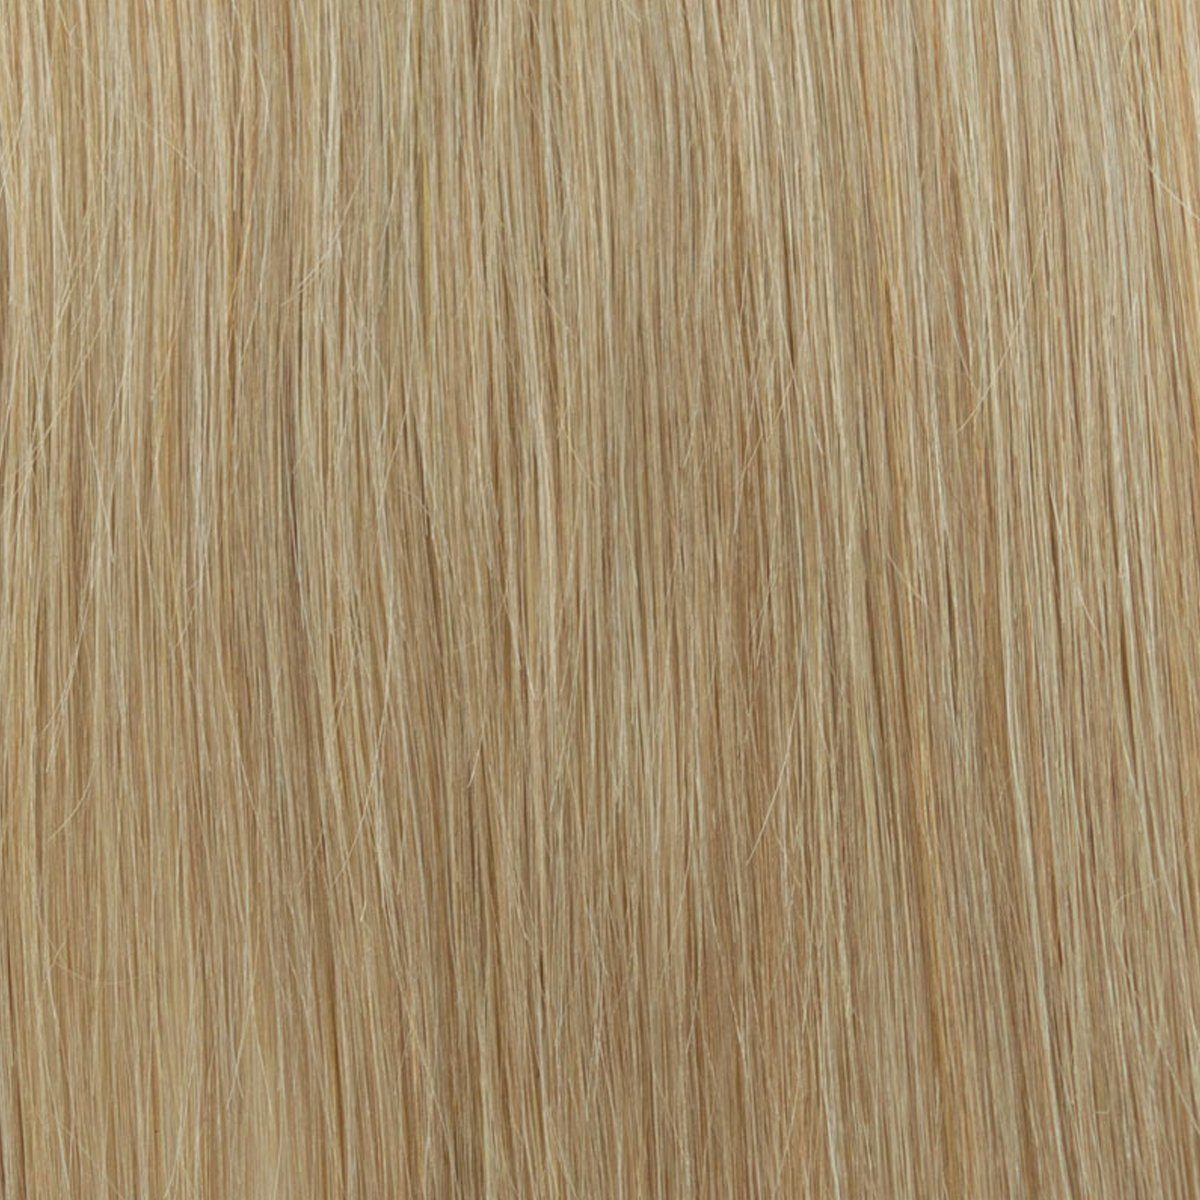 EH - Haarverlängerung aschblond Gramm, mit cm Echthaar 7-teiliges Echthaar 130 Clip-in-Extensions, Set Echthaar-Extension 60 18